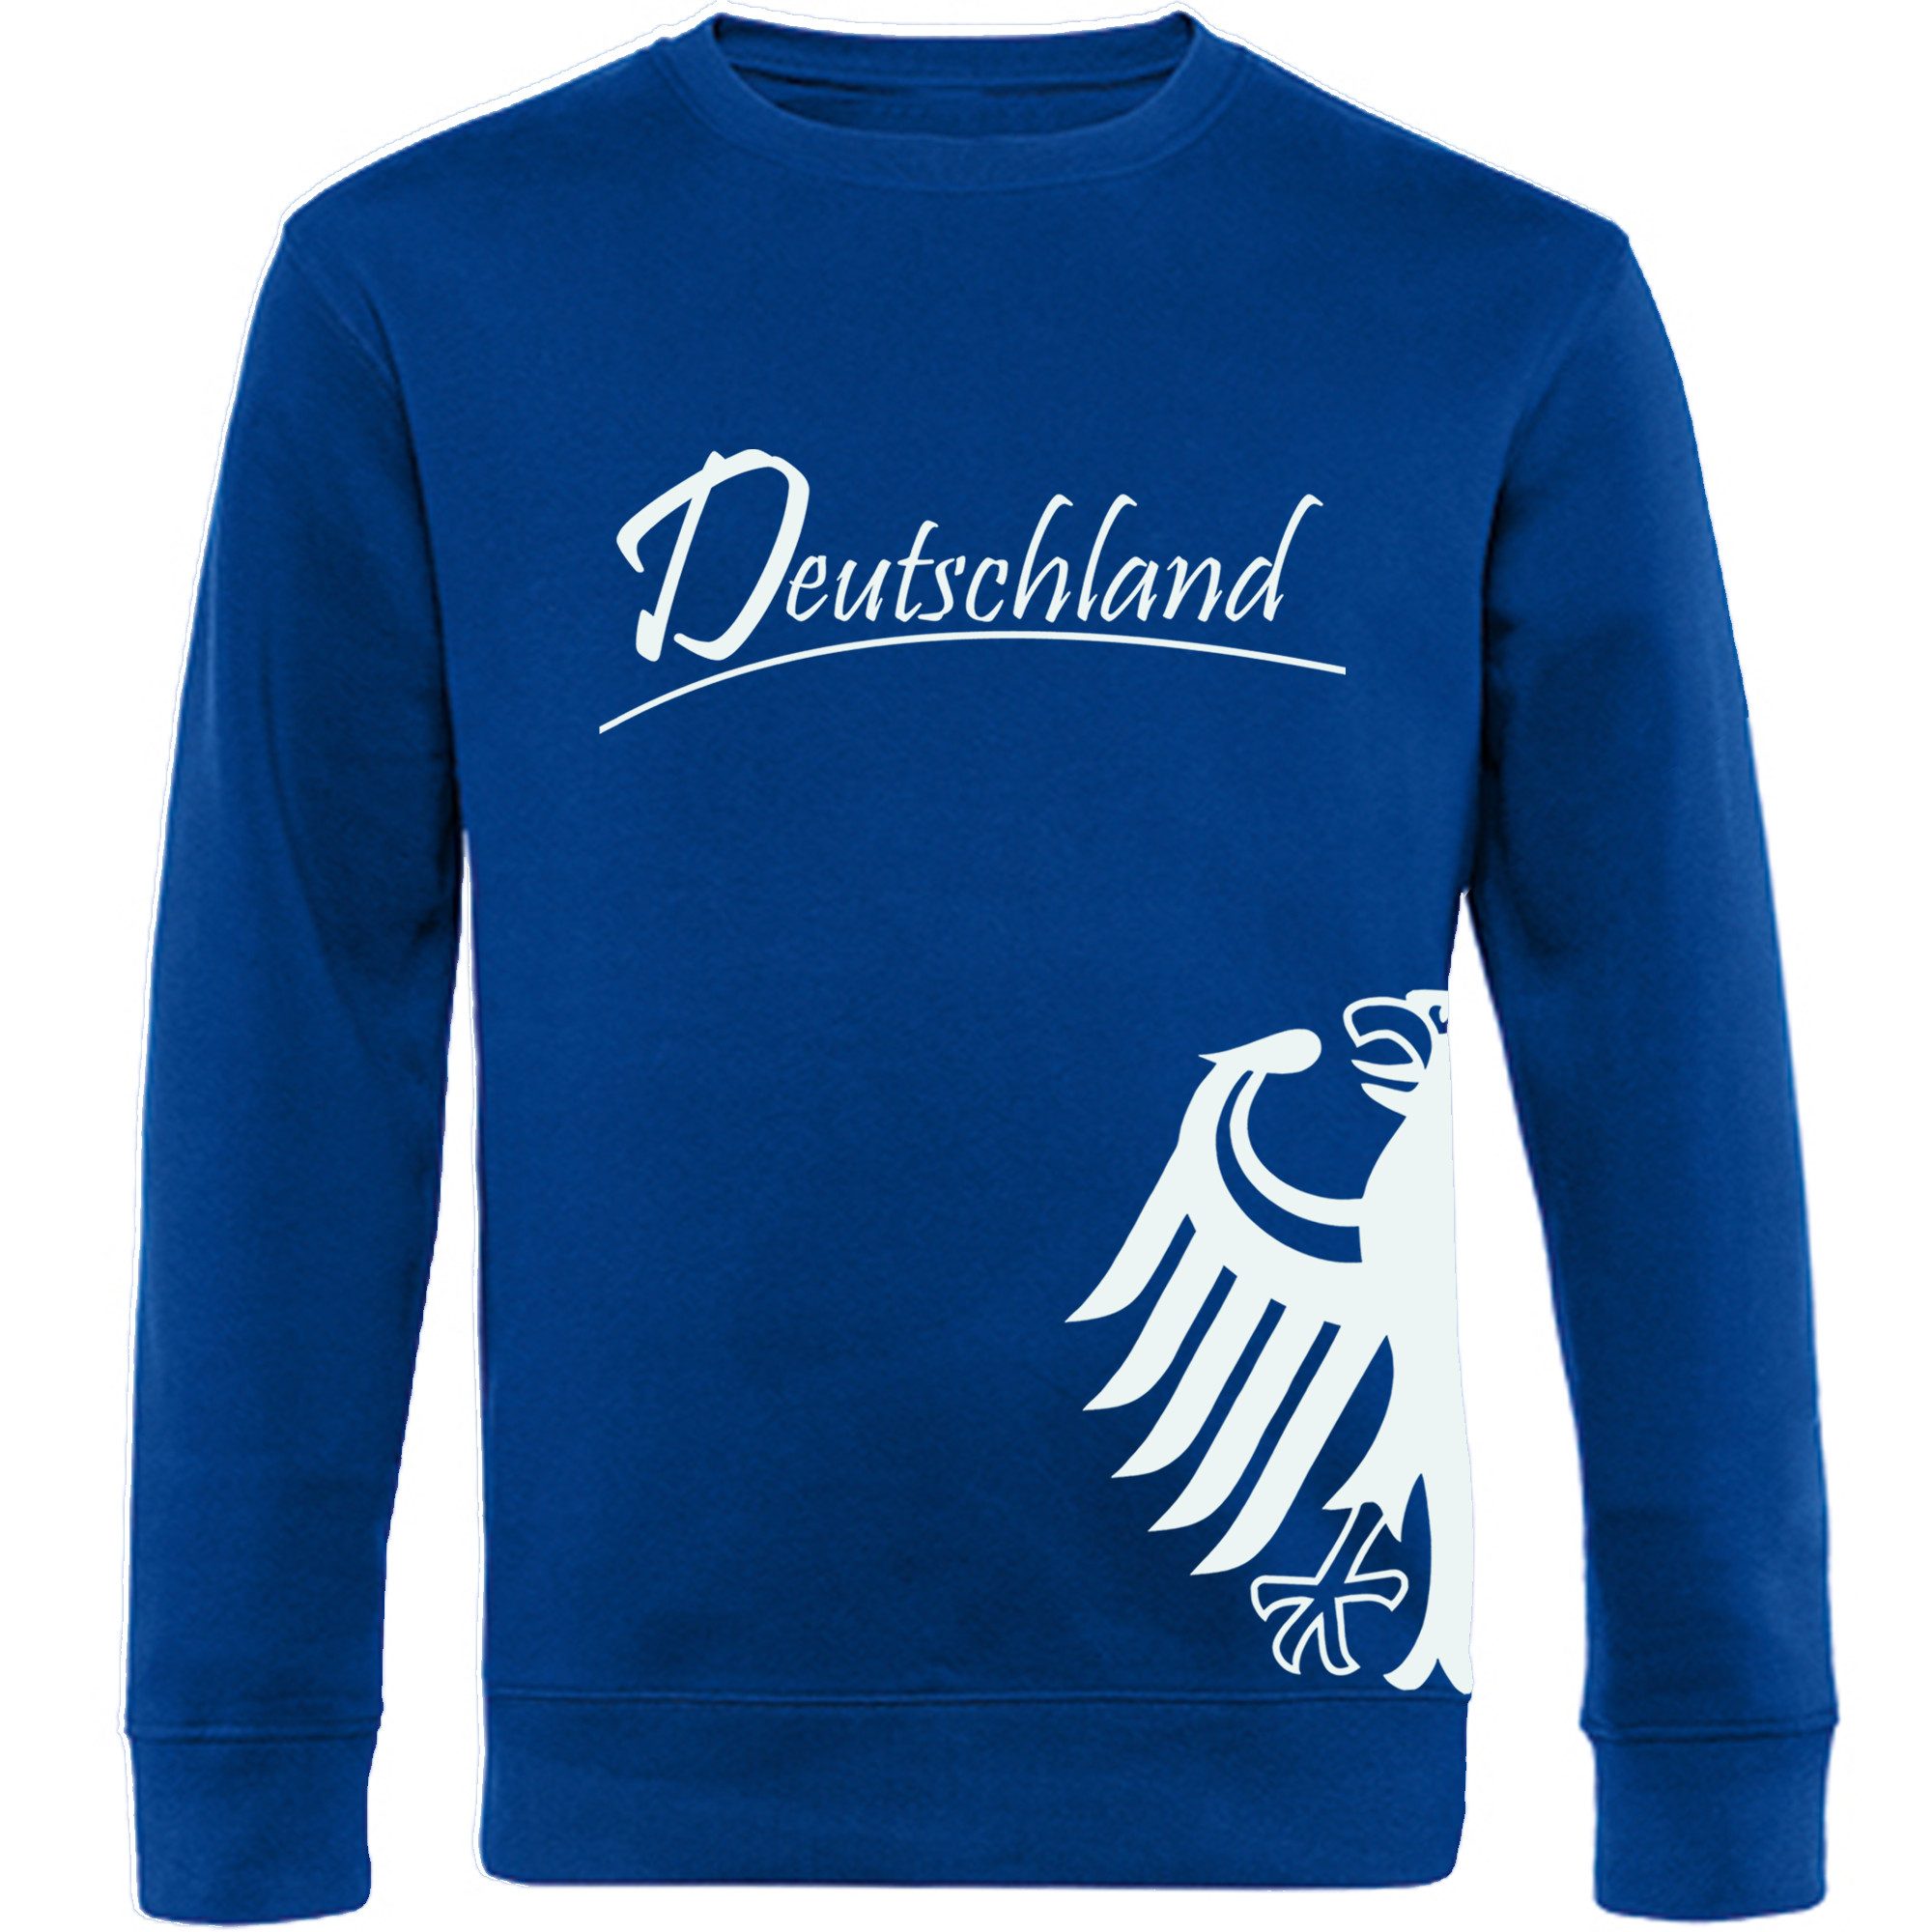 multifanshop Sweatshirt Deutschland - Adler seitlich - Pullover